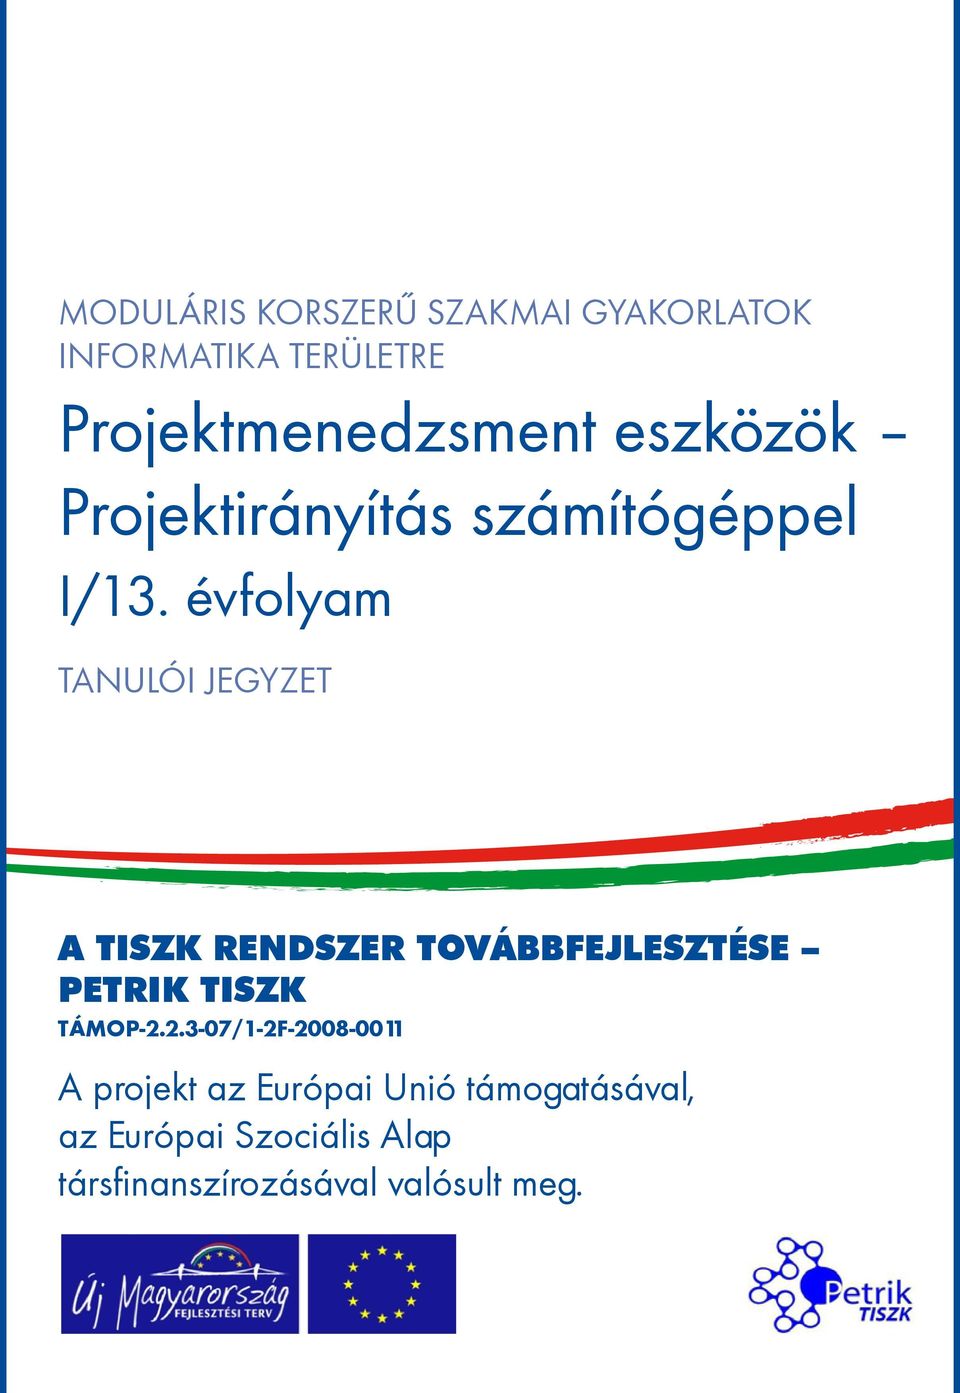 évfolyam tanulói jegyzet A TISZK rendszer továbbfejlesztése Petrik TISZK TÁMOP-2.